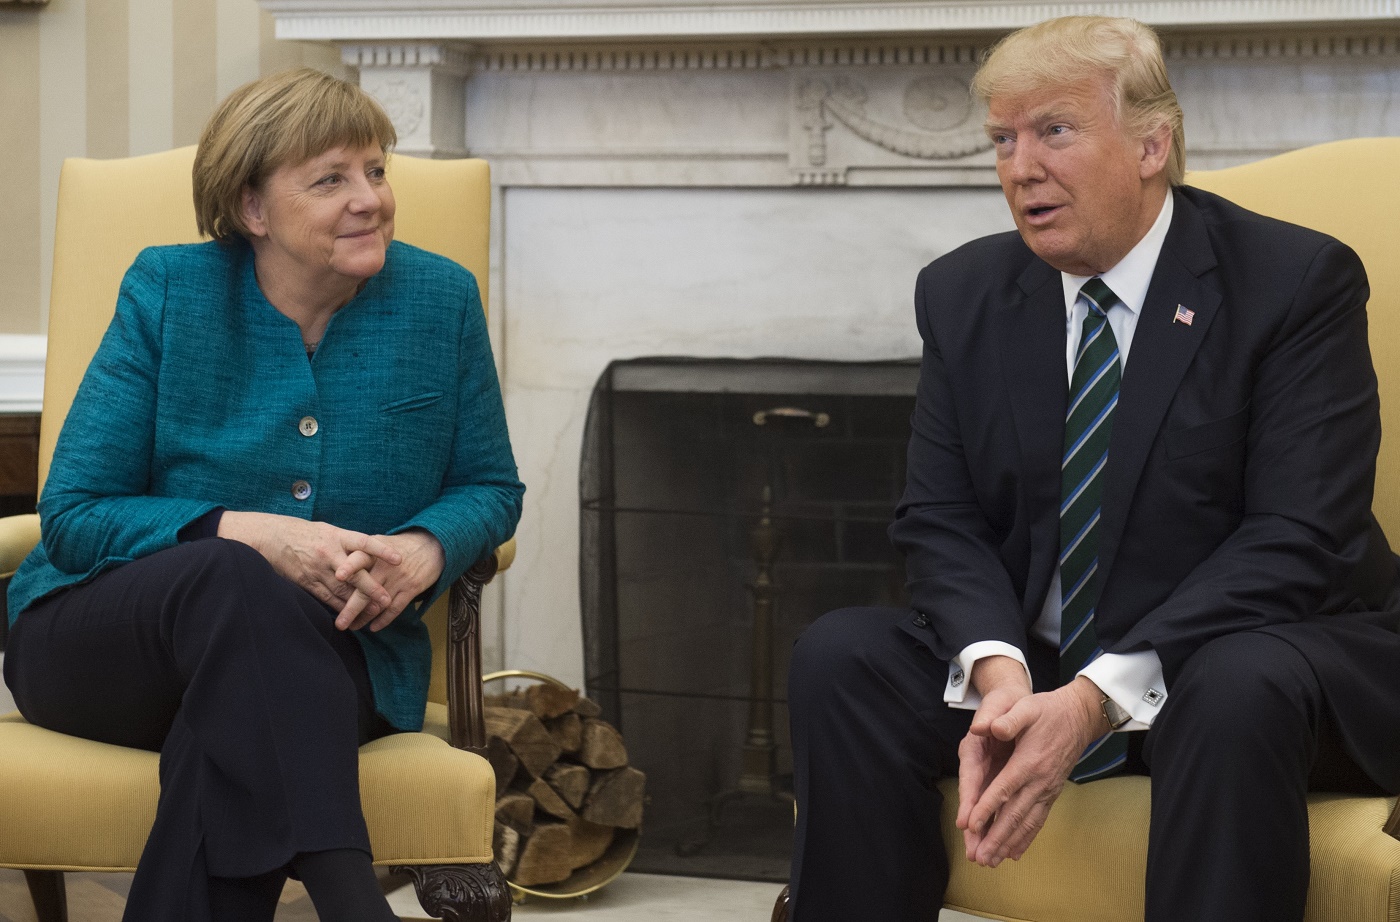 Trump no rechazó estrechar la mano a Merkel